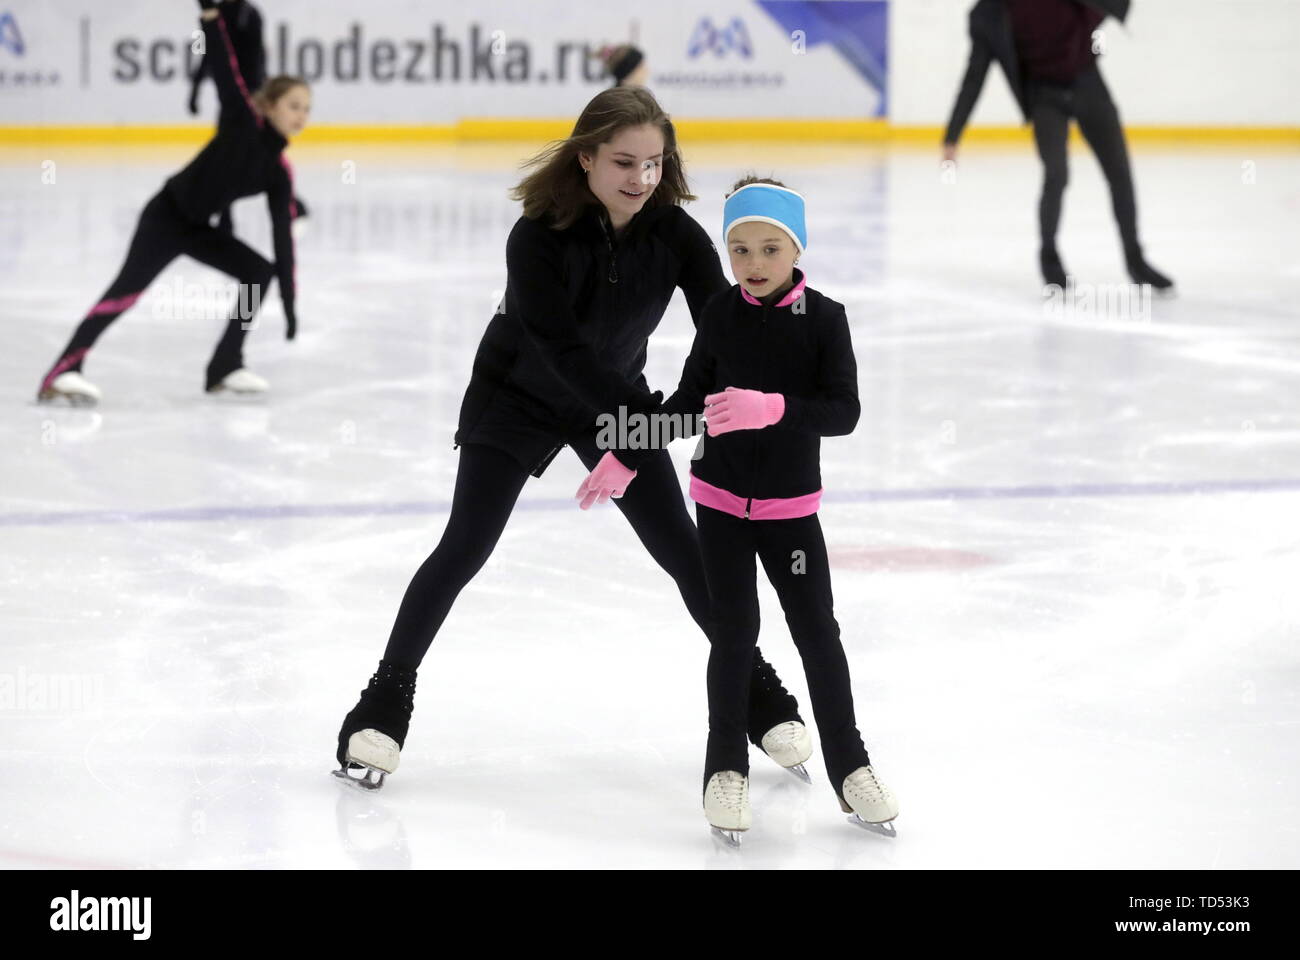 erwachsenen ice lektion skating